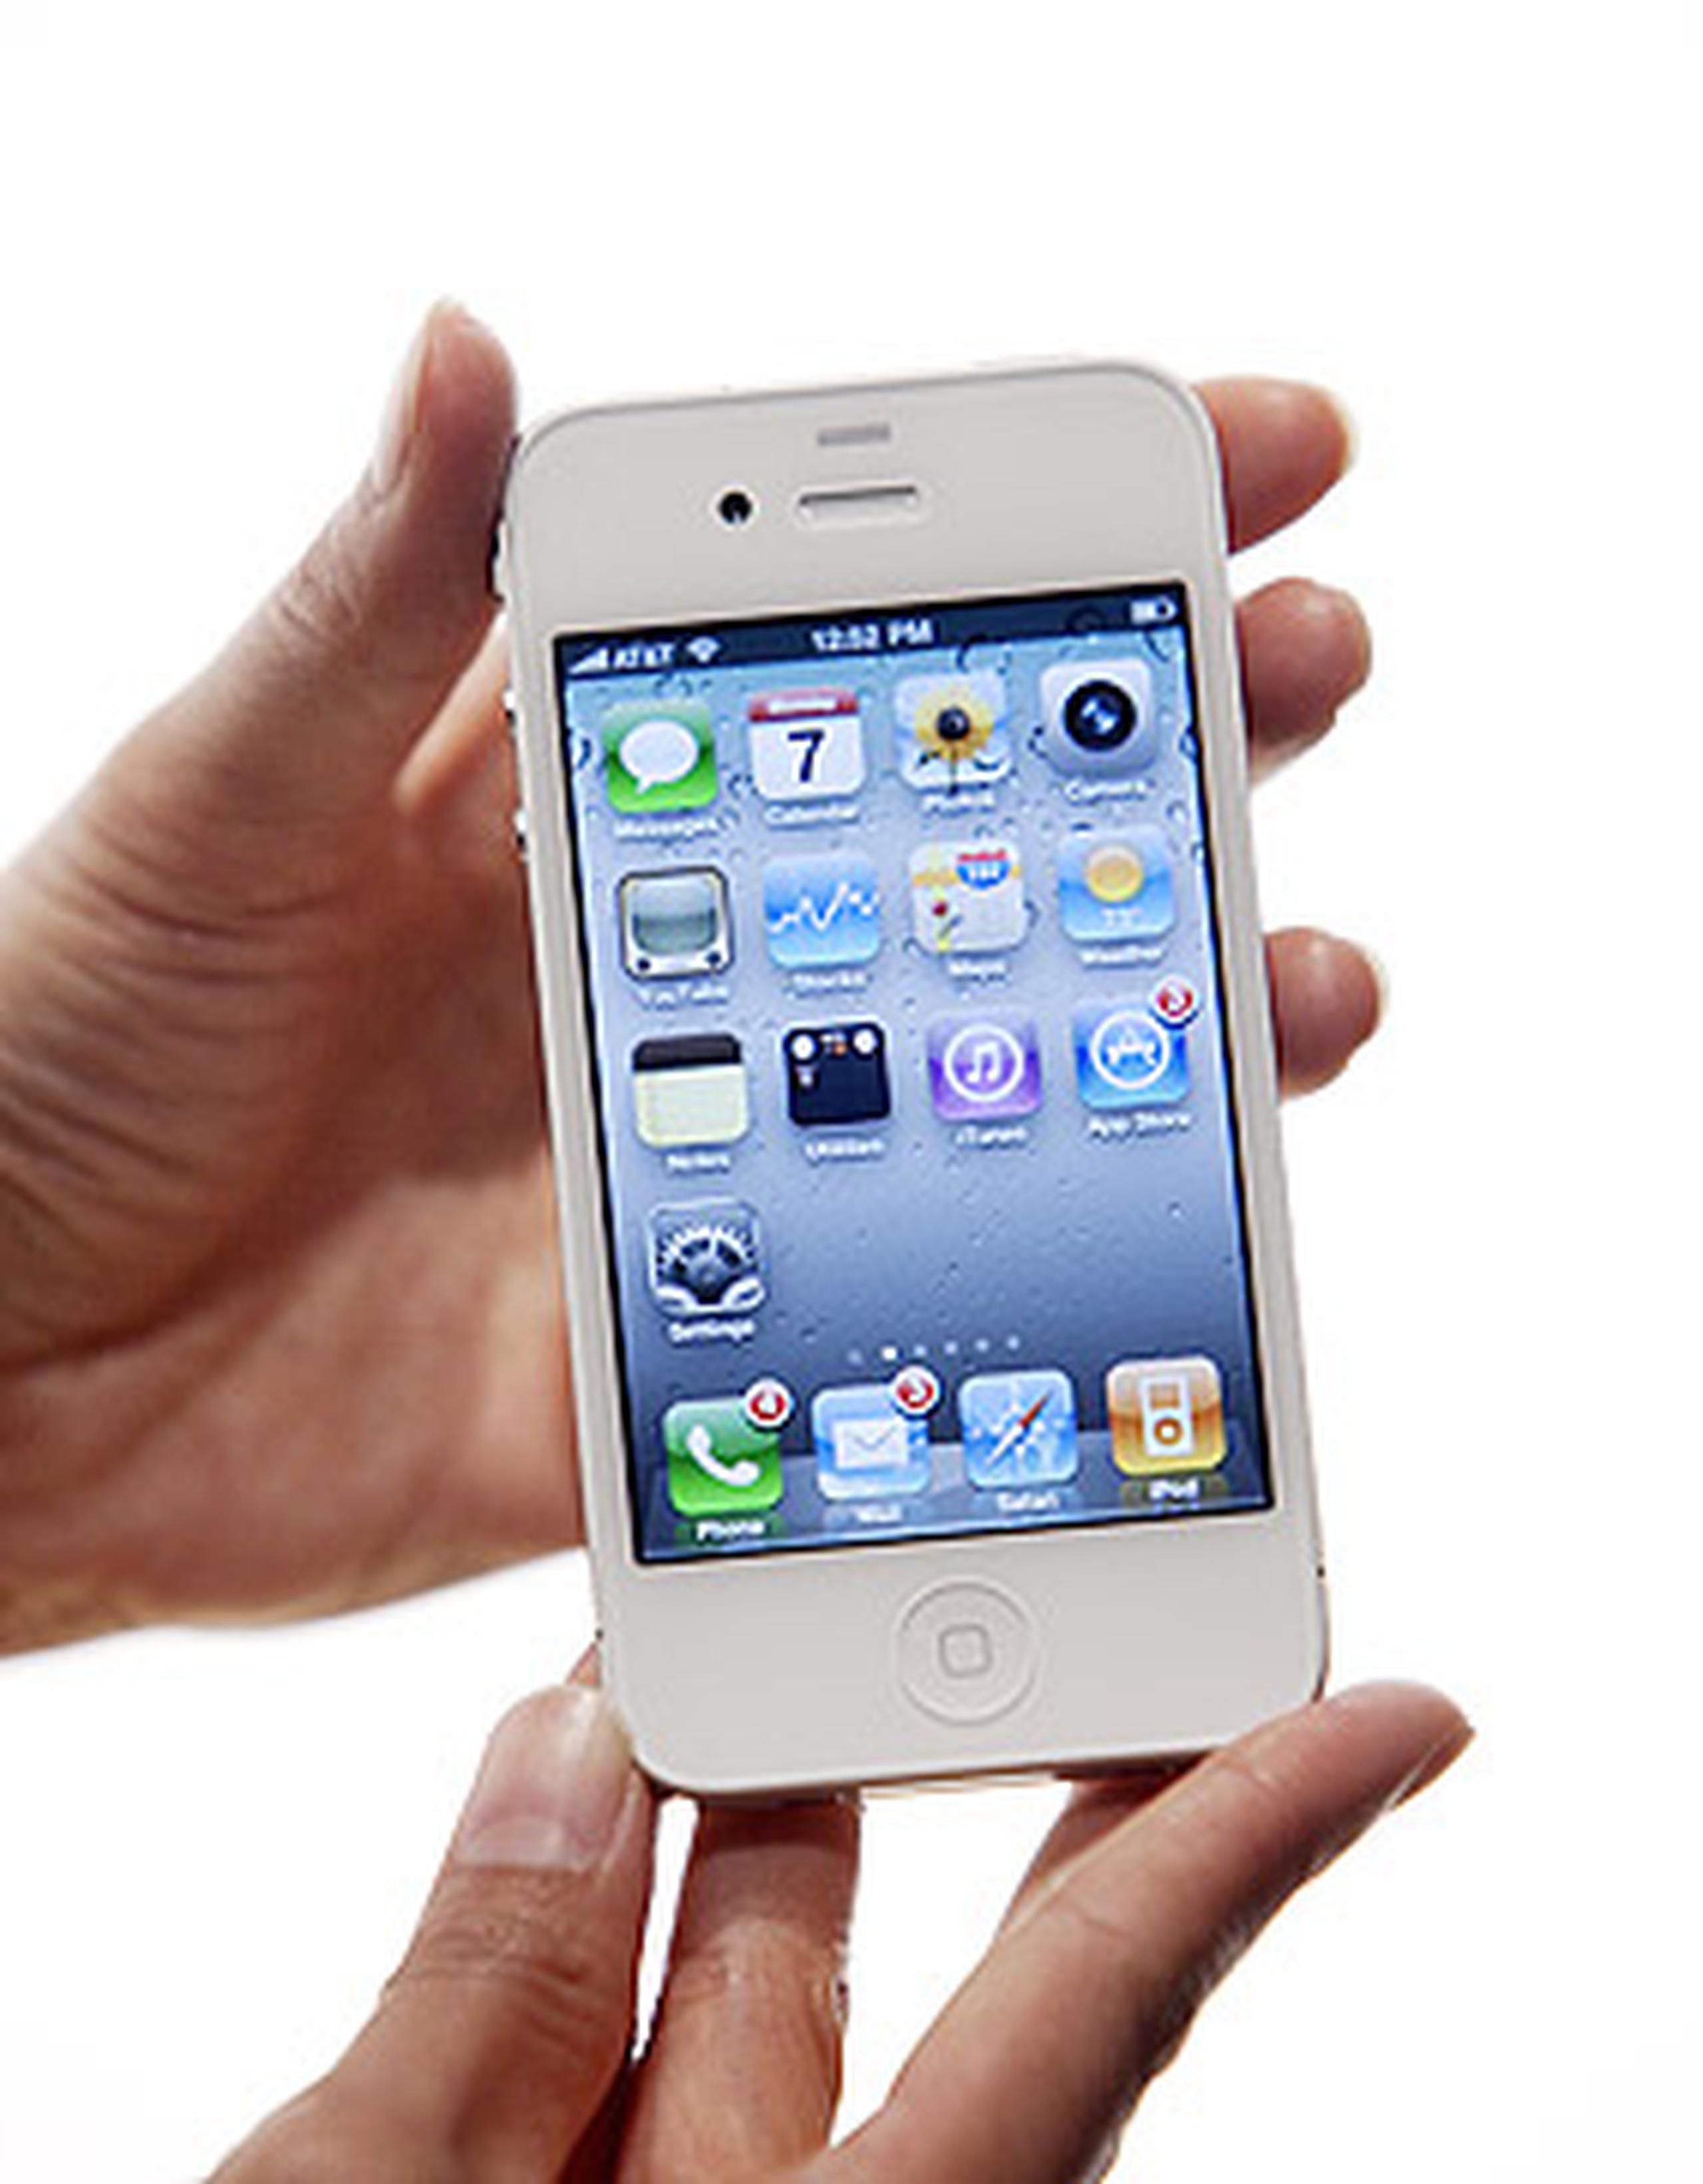 El iPhone 4 negro salió a la venta en junio pasado. La empresa esperaba tener los teléfonos blancos disponibles en julio, luego a finales de 2010. (Archivo)